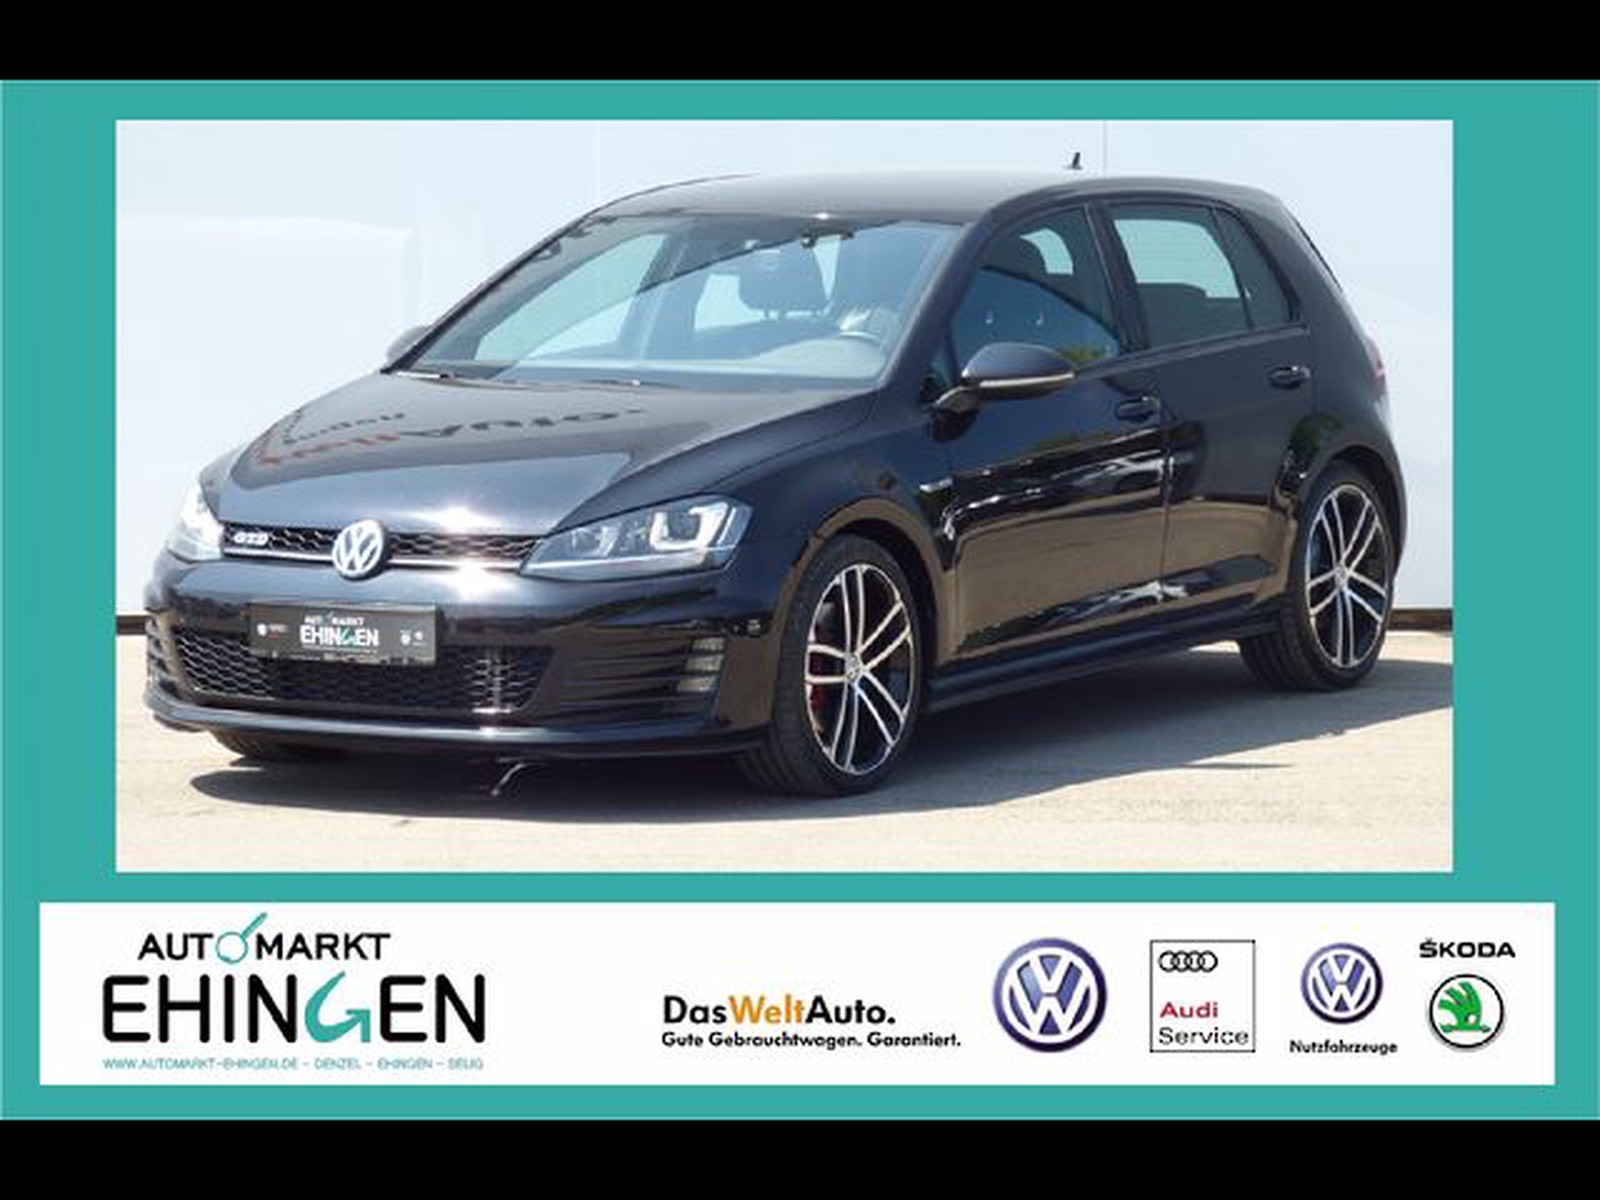 cijfer Dragende cirkel Vernietigen Volkswagen Golf VII GTD 2.0 TDI DSG Navi Xenon AHK EU6 gebraucht kaufen in  Ehingen Preis 17888 eur - Int.Nr.: 01963 VERKAUFT